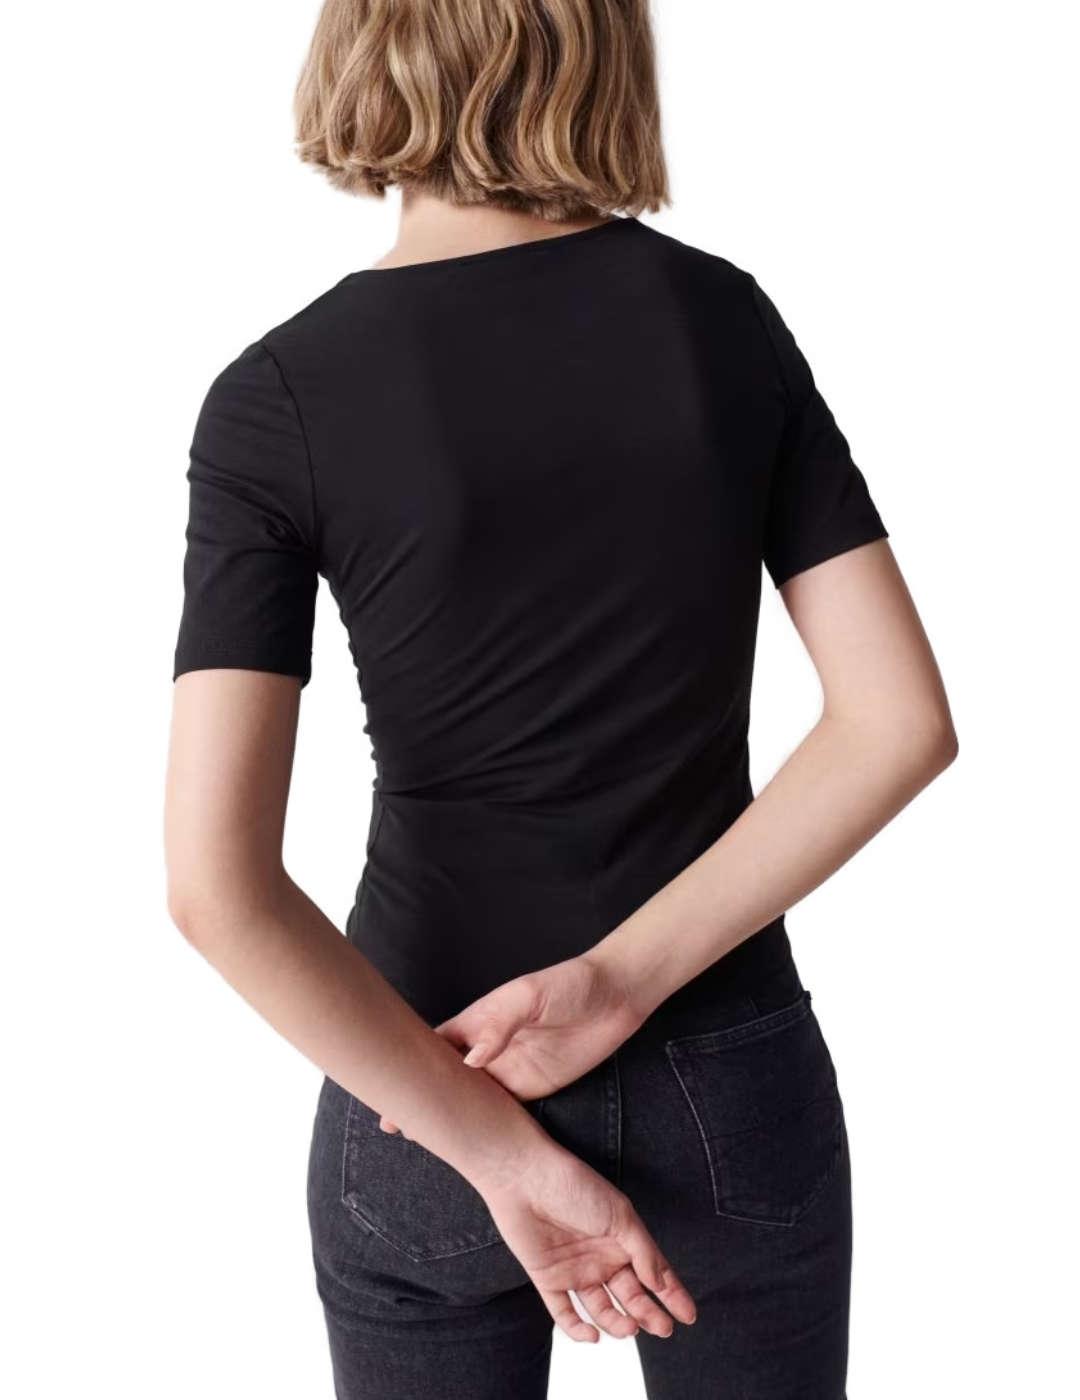 Camiseta Salsa escote asimétrico negra de mujer